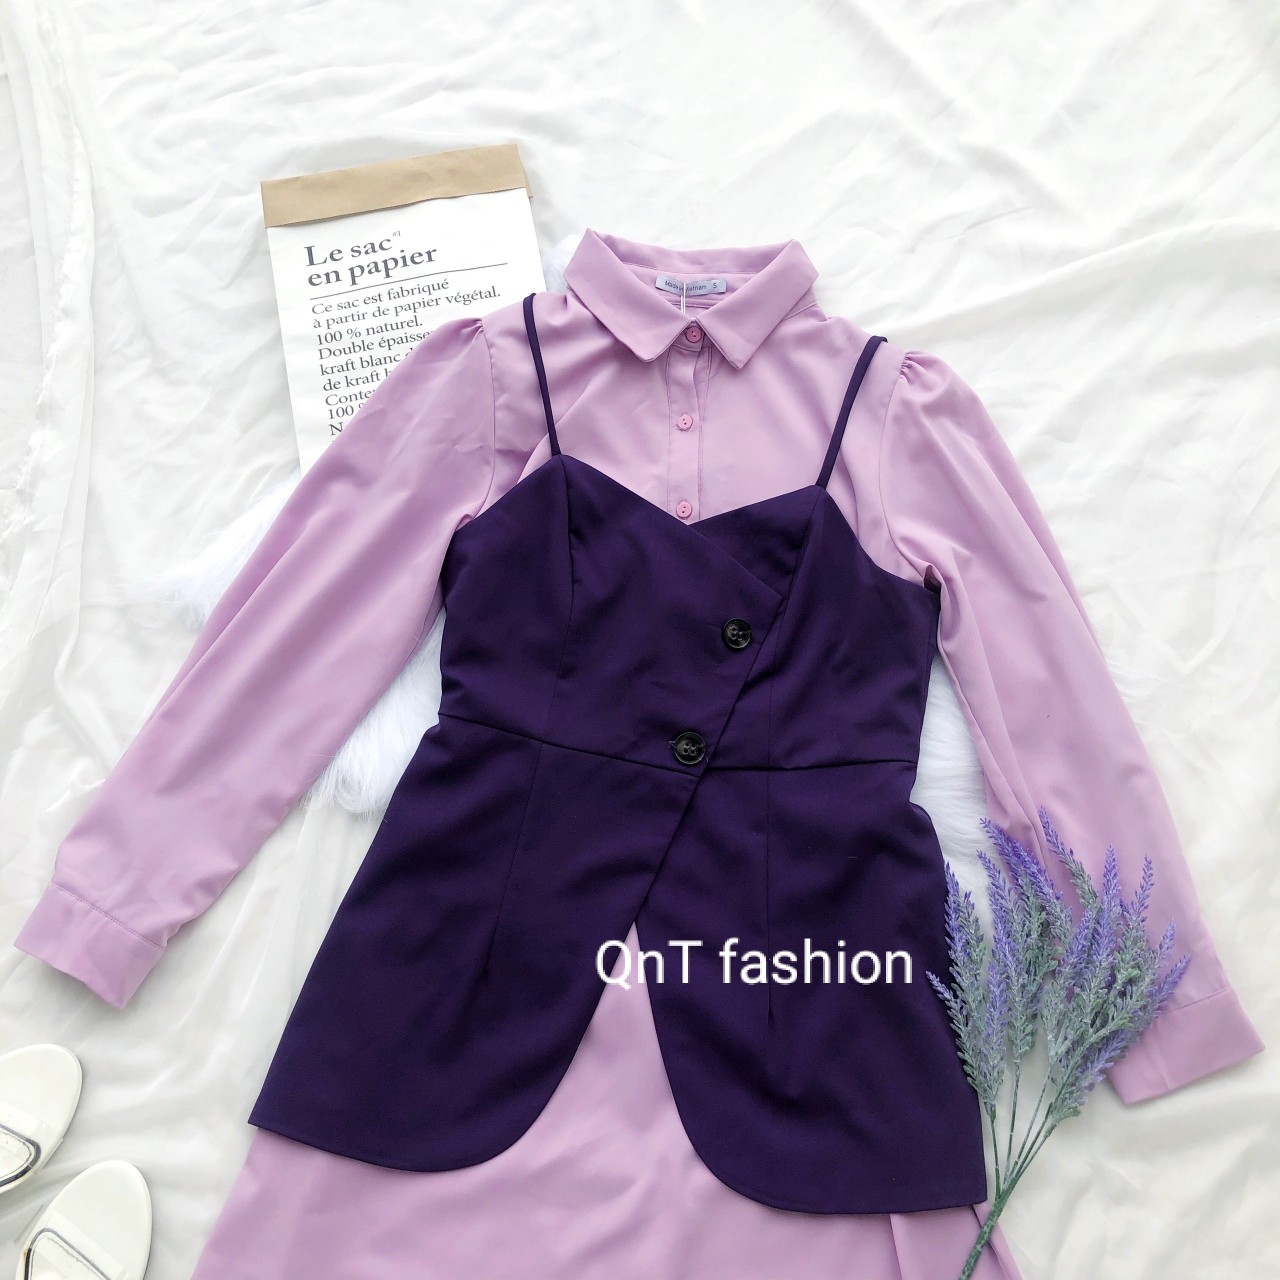 Đầm Công Sở thiết kế-Sét Váy Sơ Mi Kết Hợp Áo 2 Dây Vạt Chéo Cài Cúc Đi Làm Hay Đi Chơi Cực Xinh Và Thu Hút